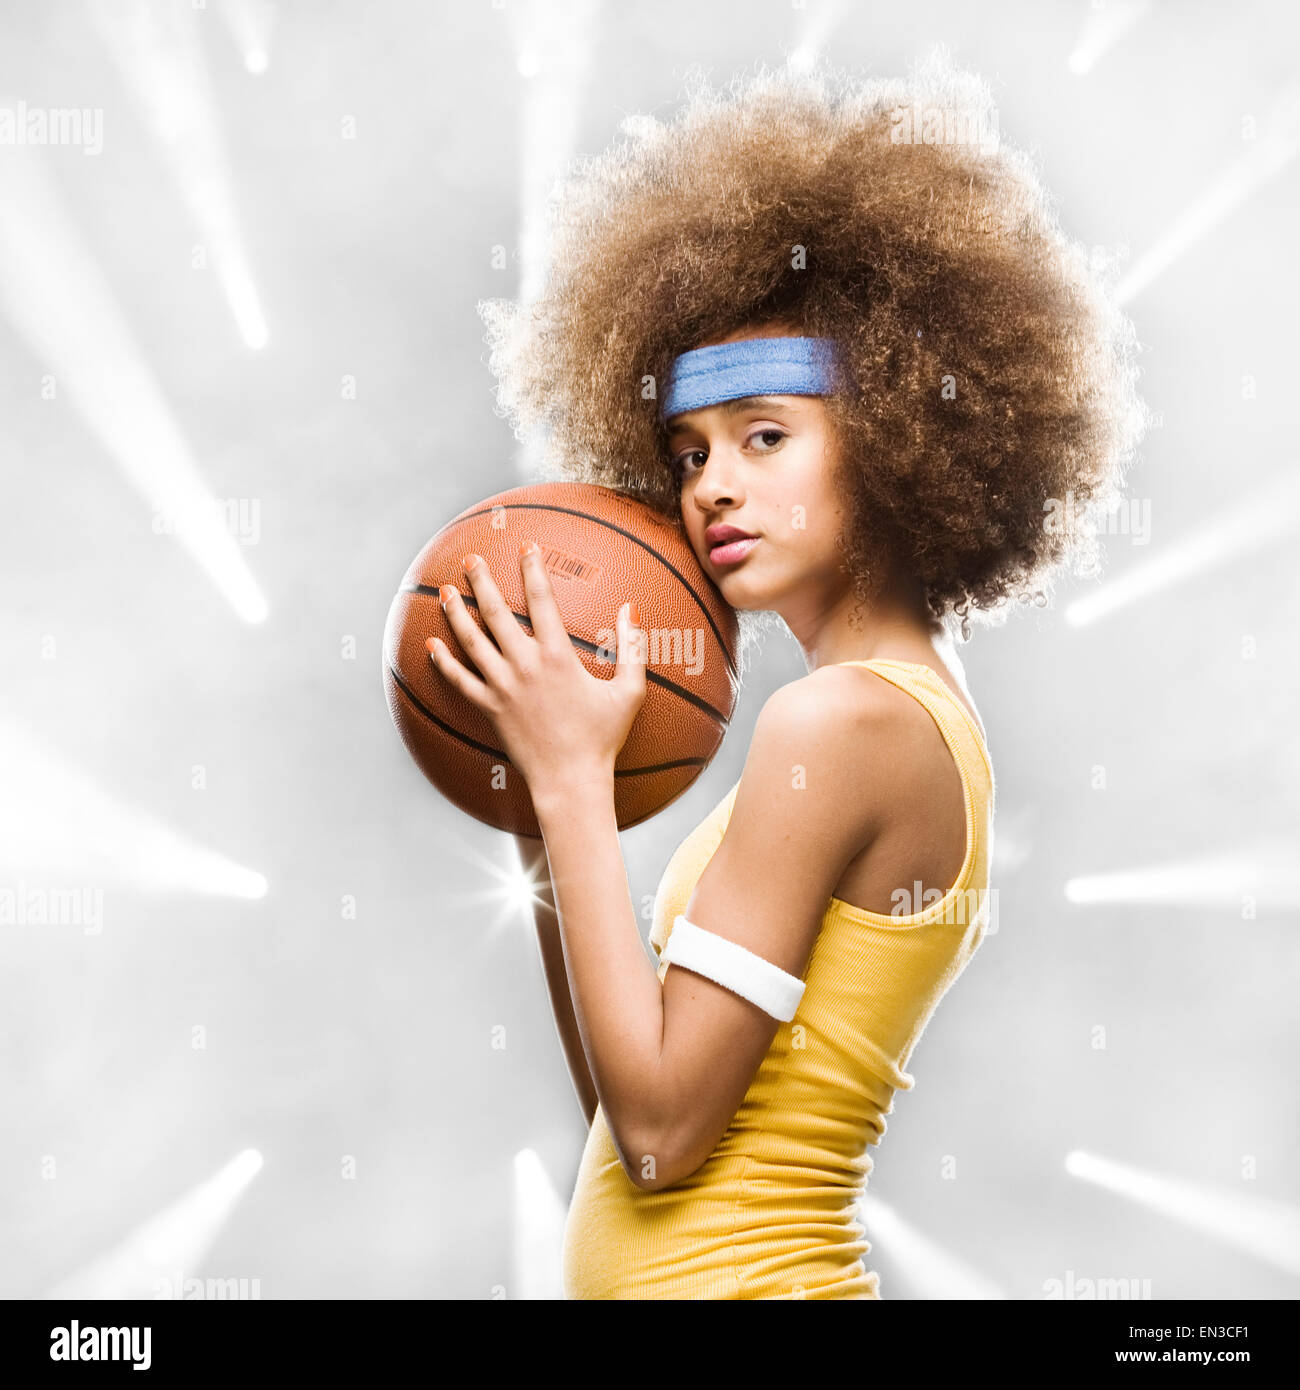 Joueur de basket-ball féminin avec un afro Banque D'Images